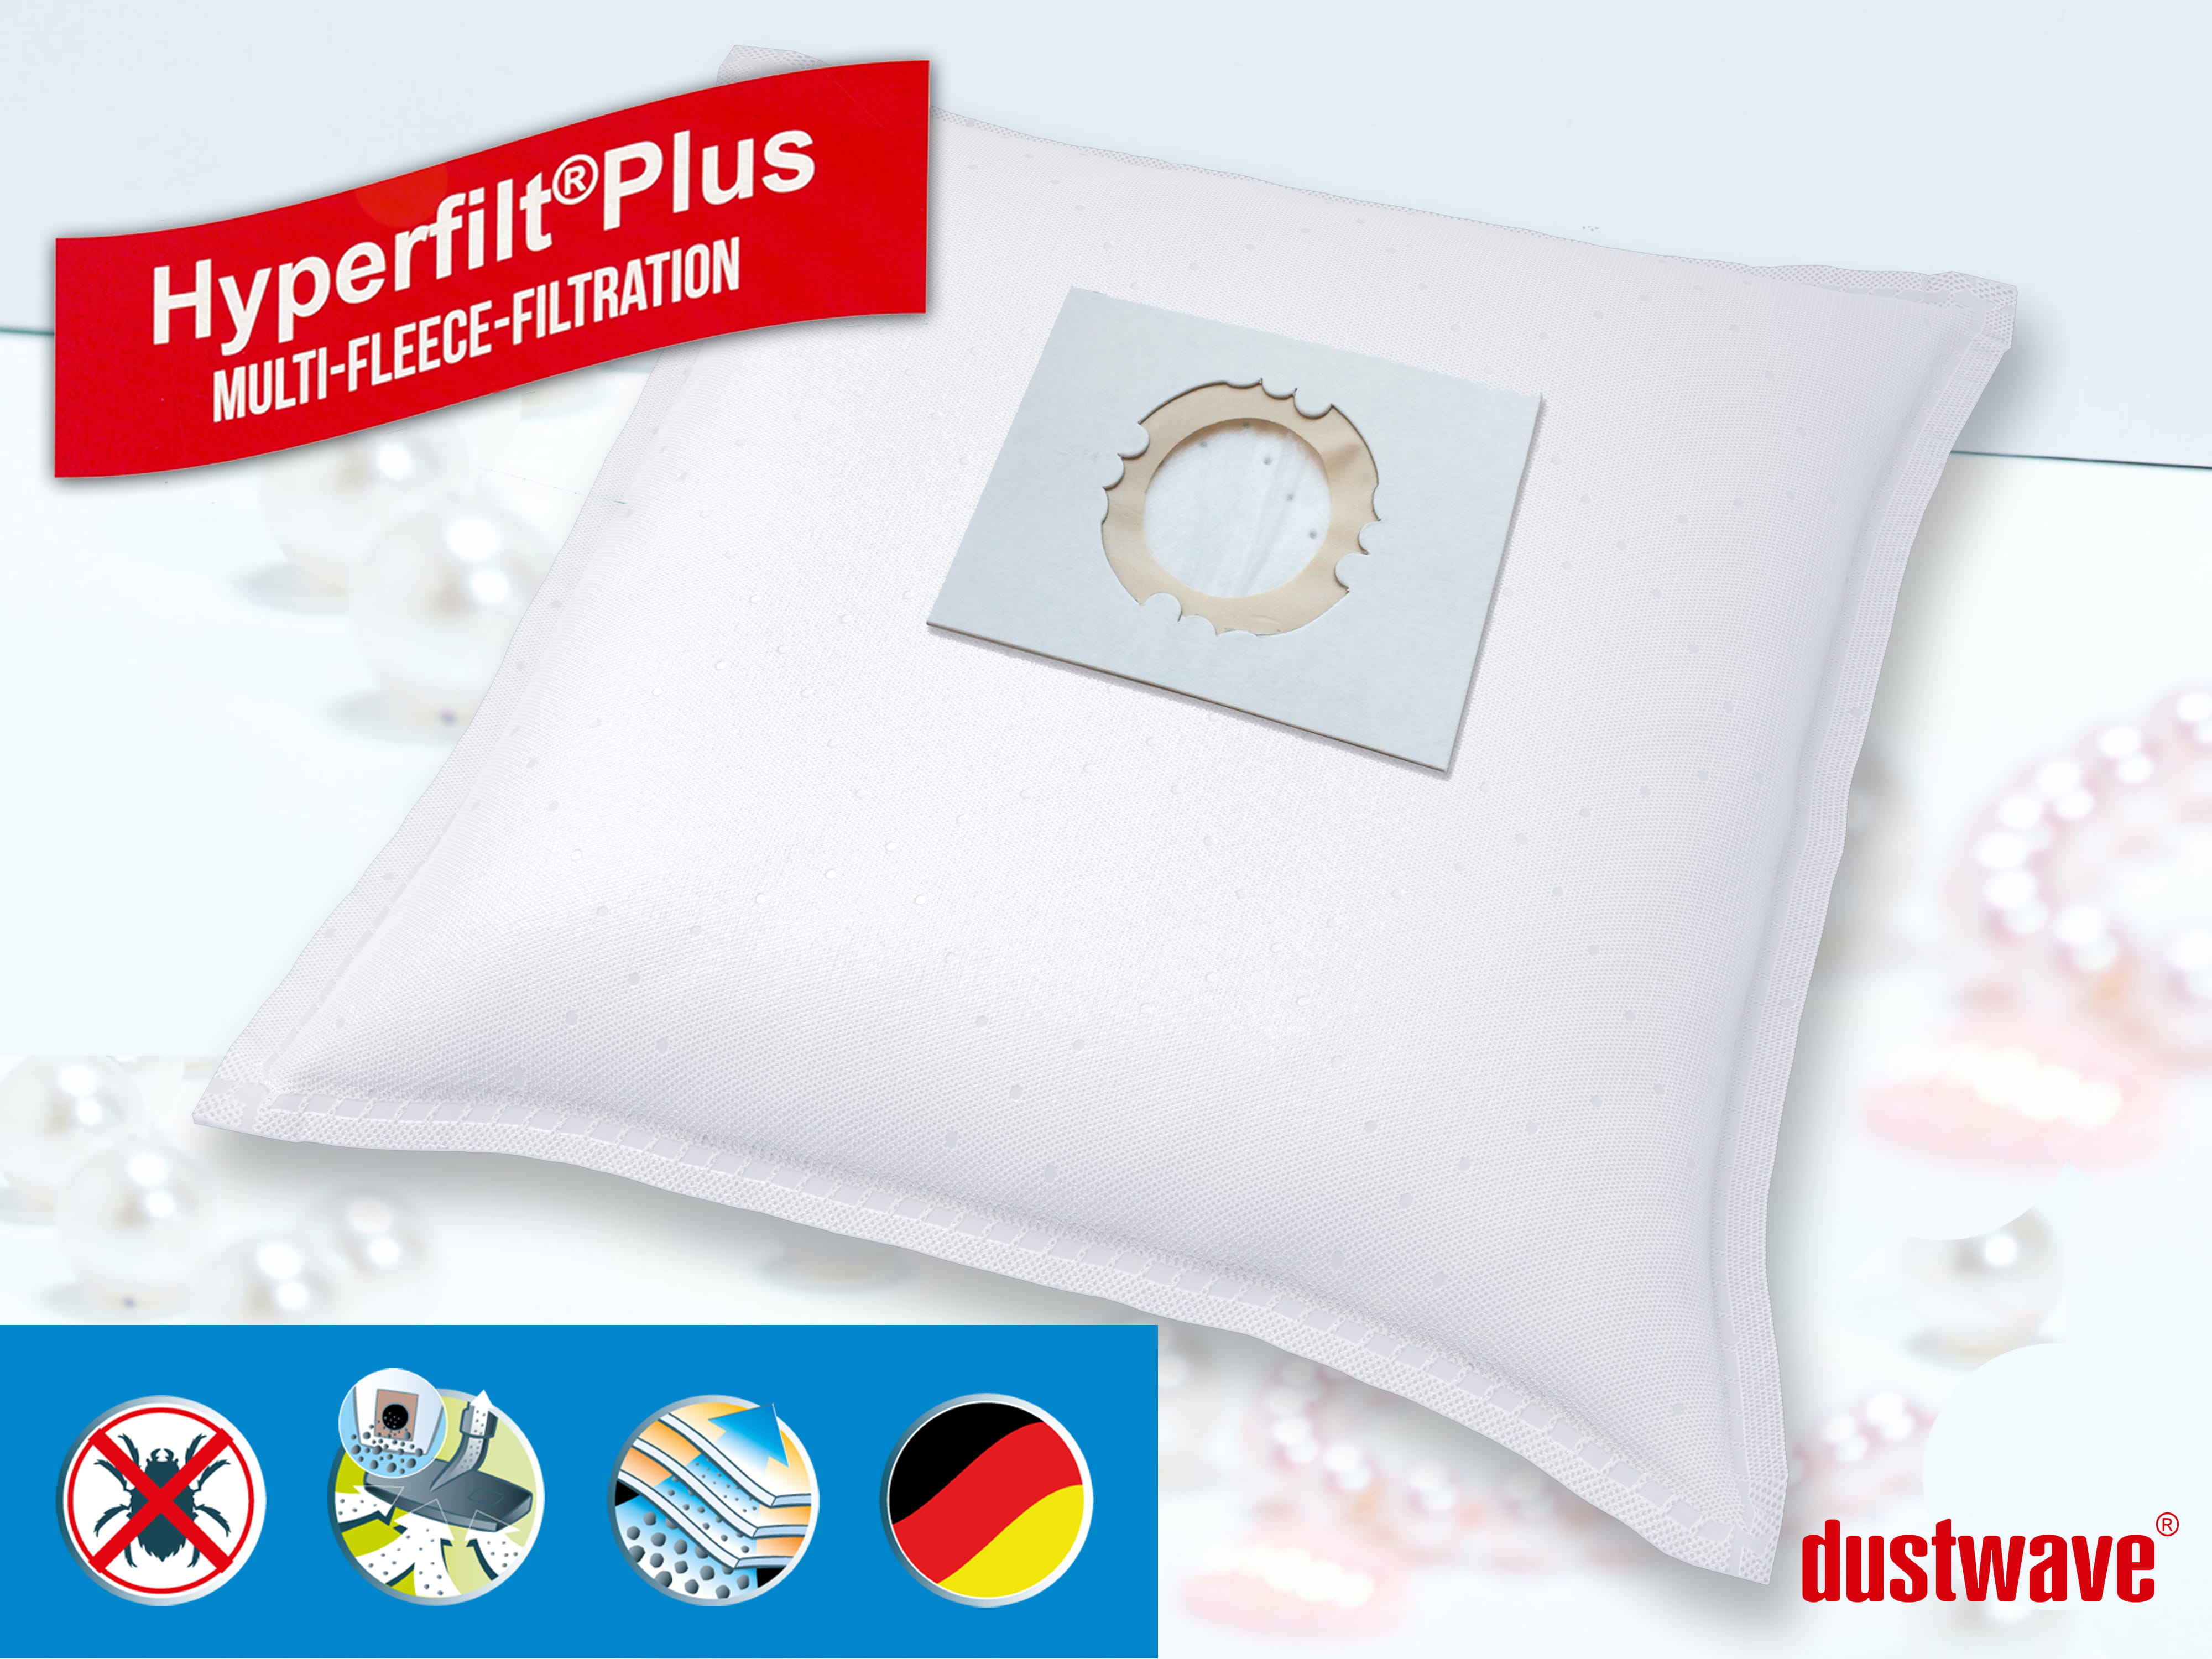 Dustwave® 10 Staubsaugerbeutel für Hoover BD S2053 021 - hocheffizient, mehrlagiges Mikrovlies mit Hygieneverschluss - Made in Germany